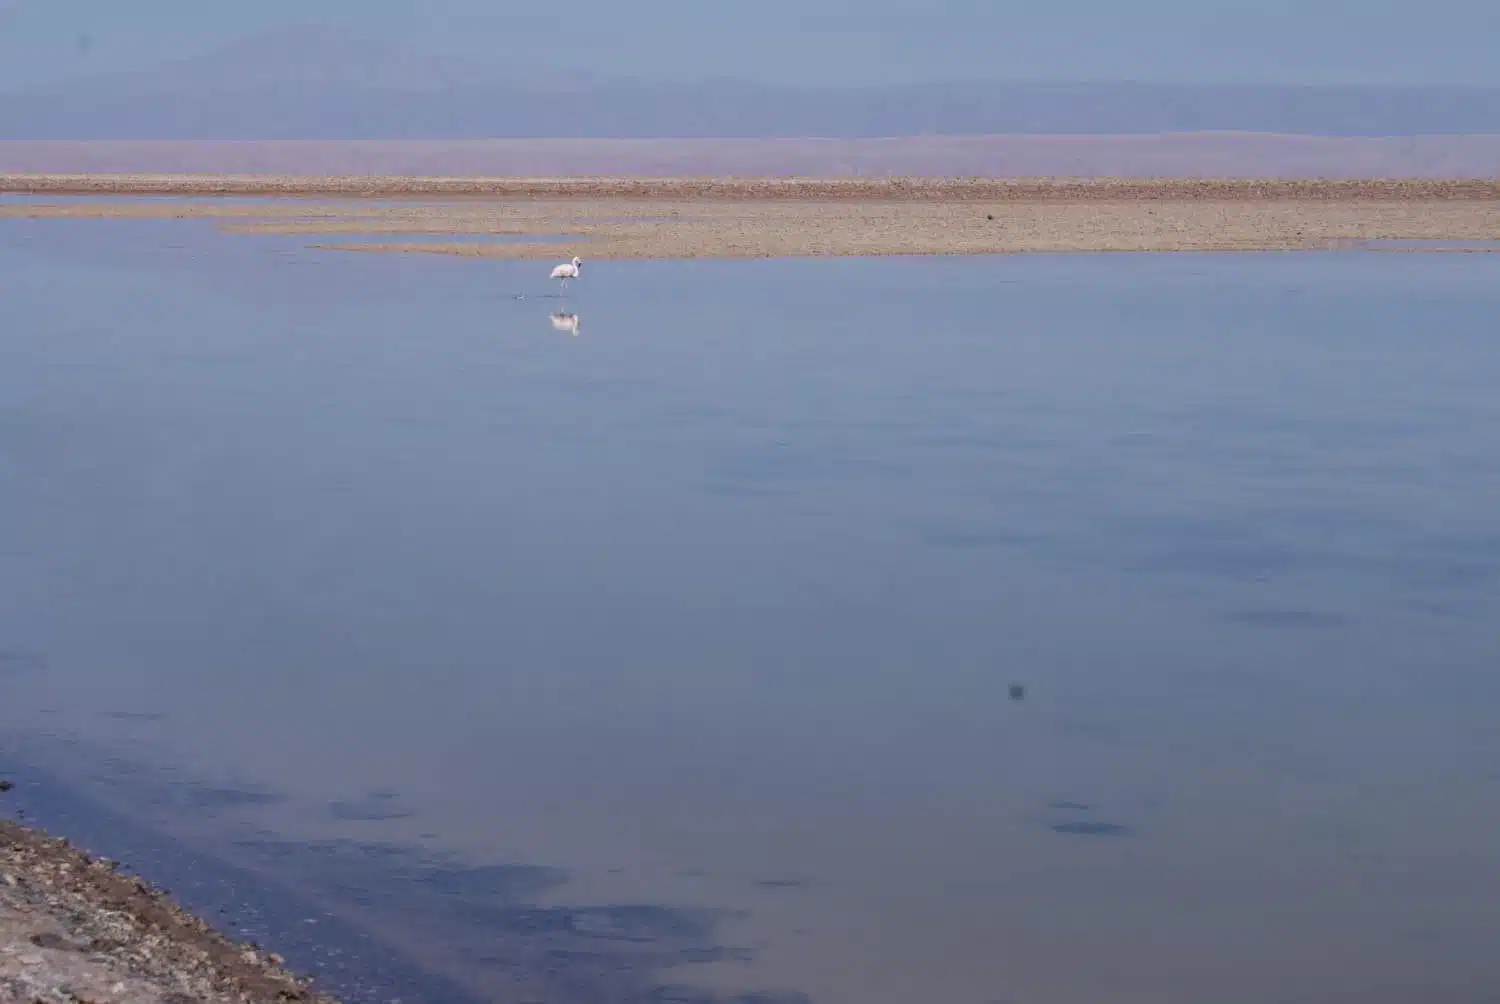 Flamingo at Laguna Chaxa, Atacama Desert Photos 